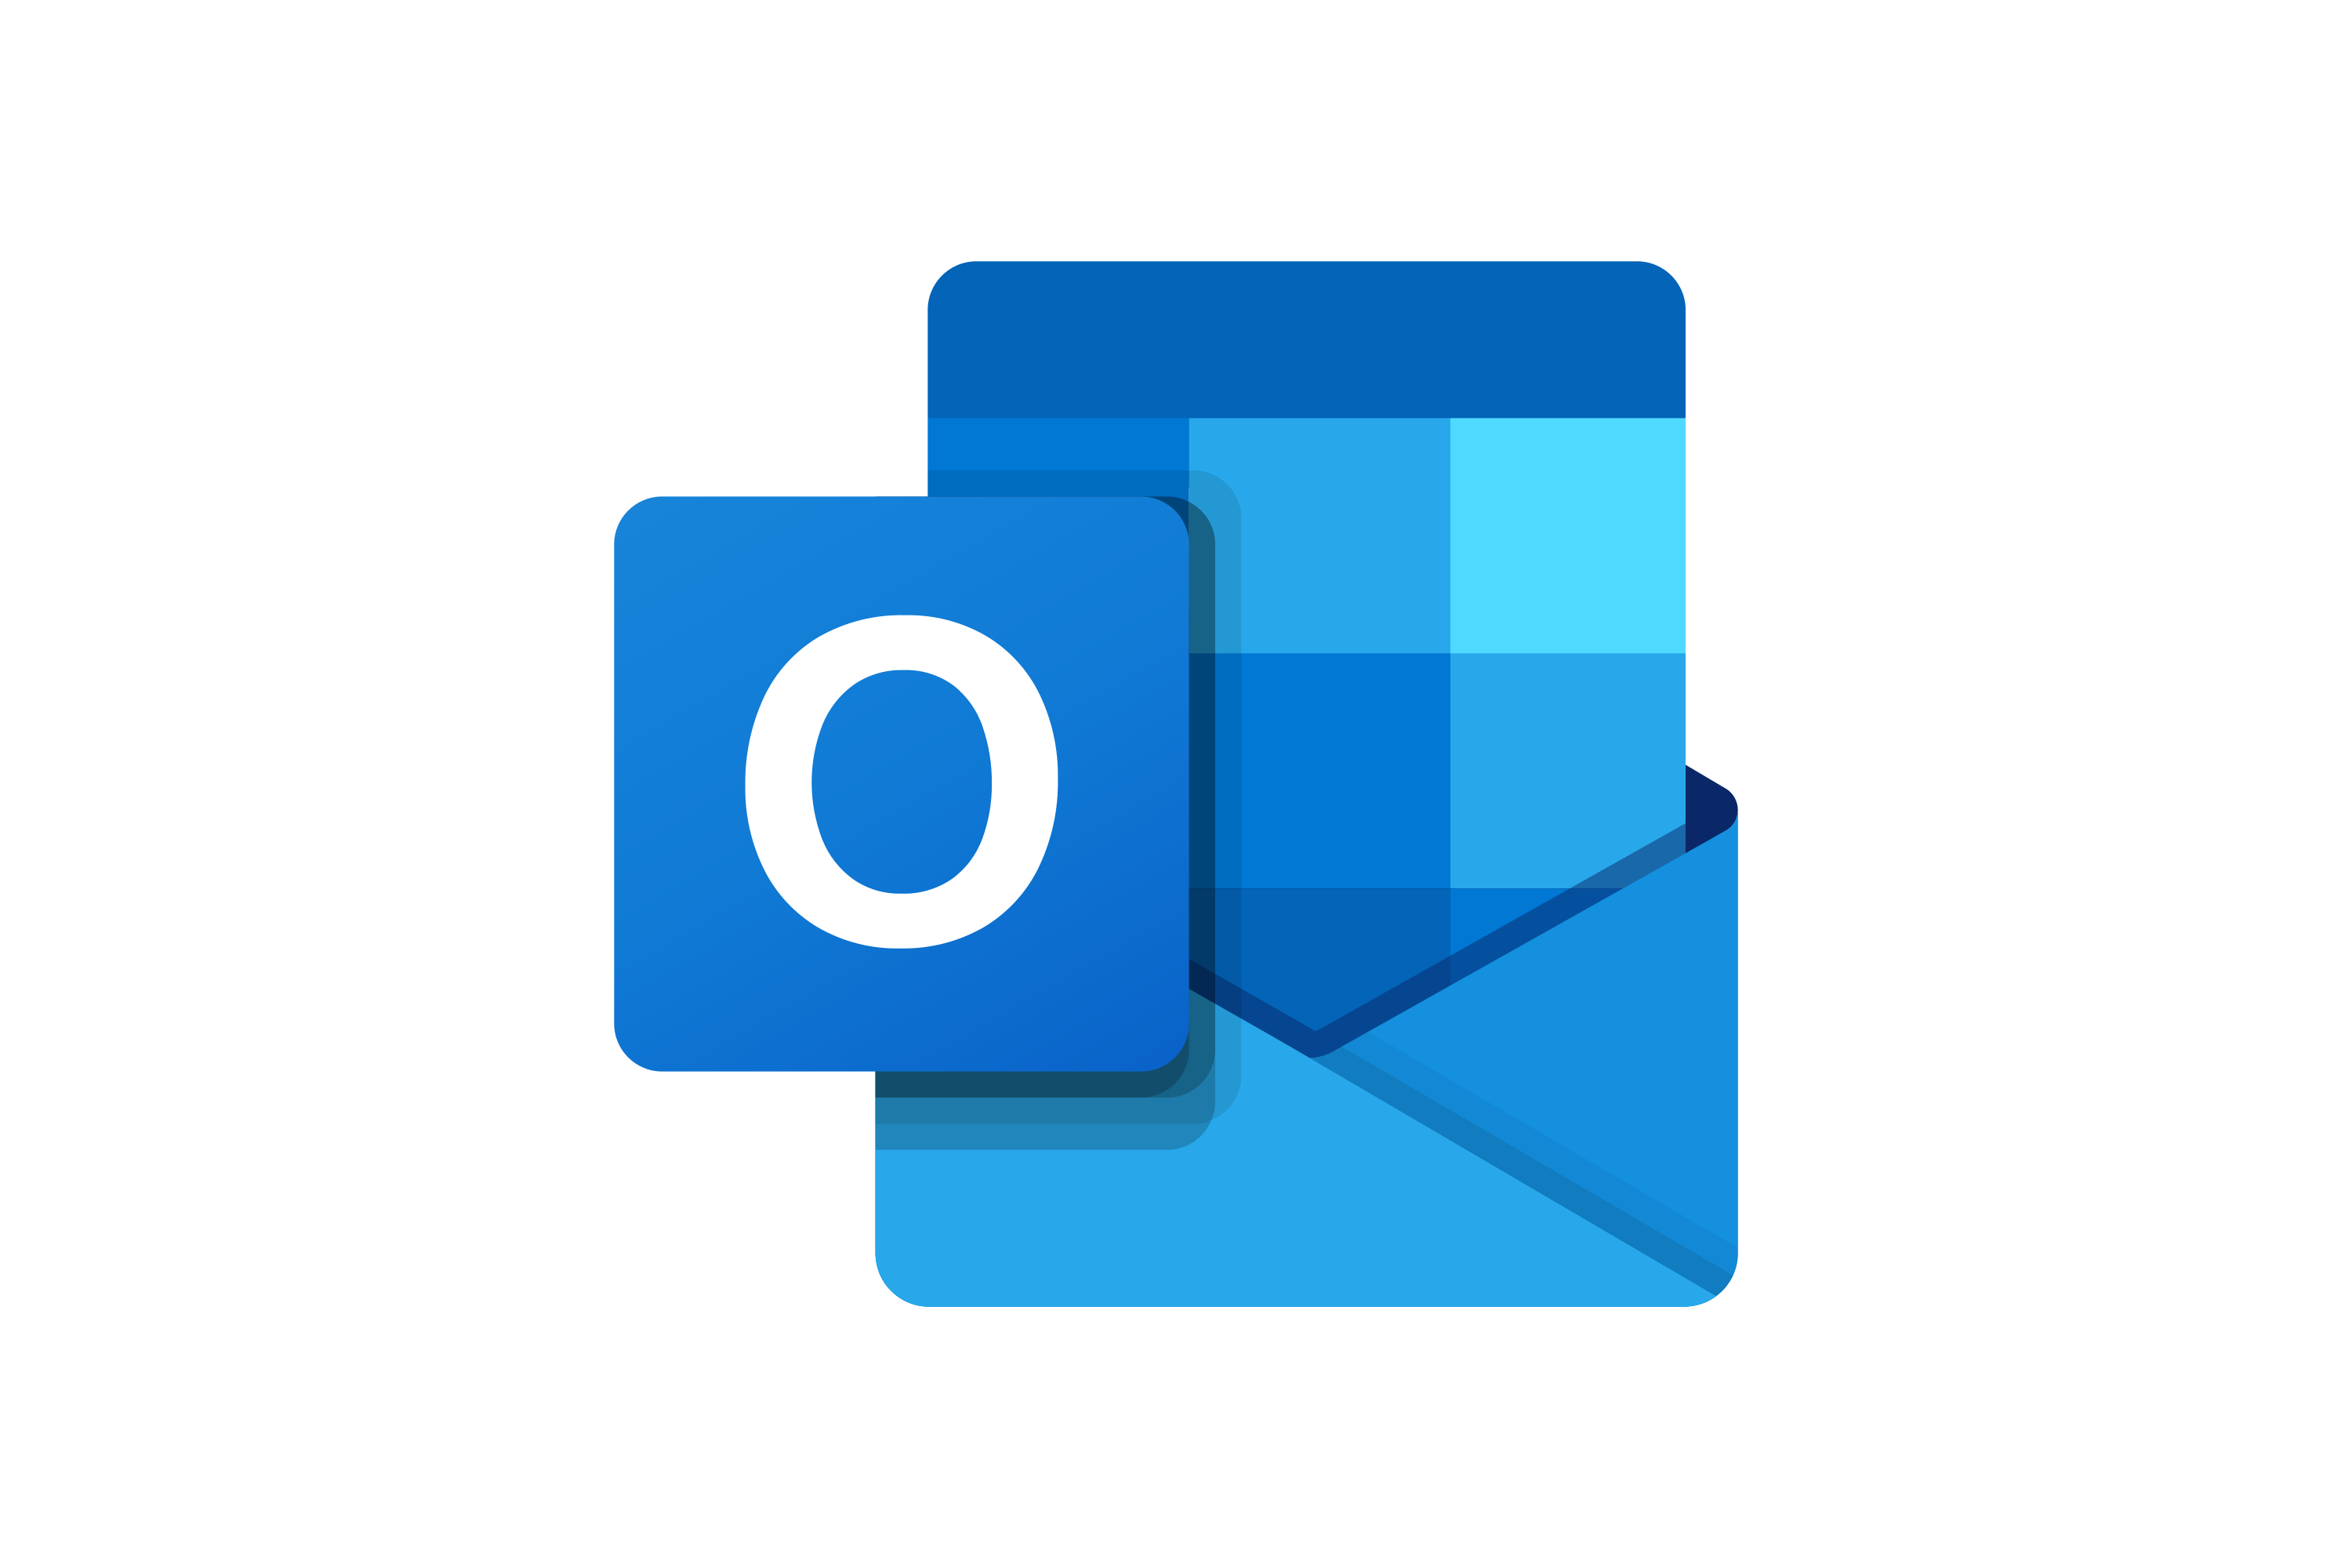 Buy Outlook Accounts